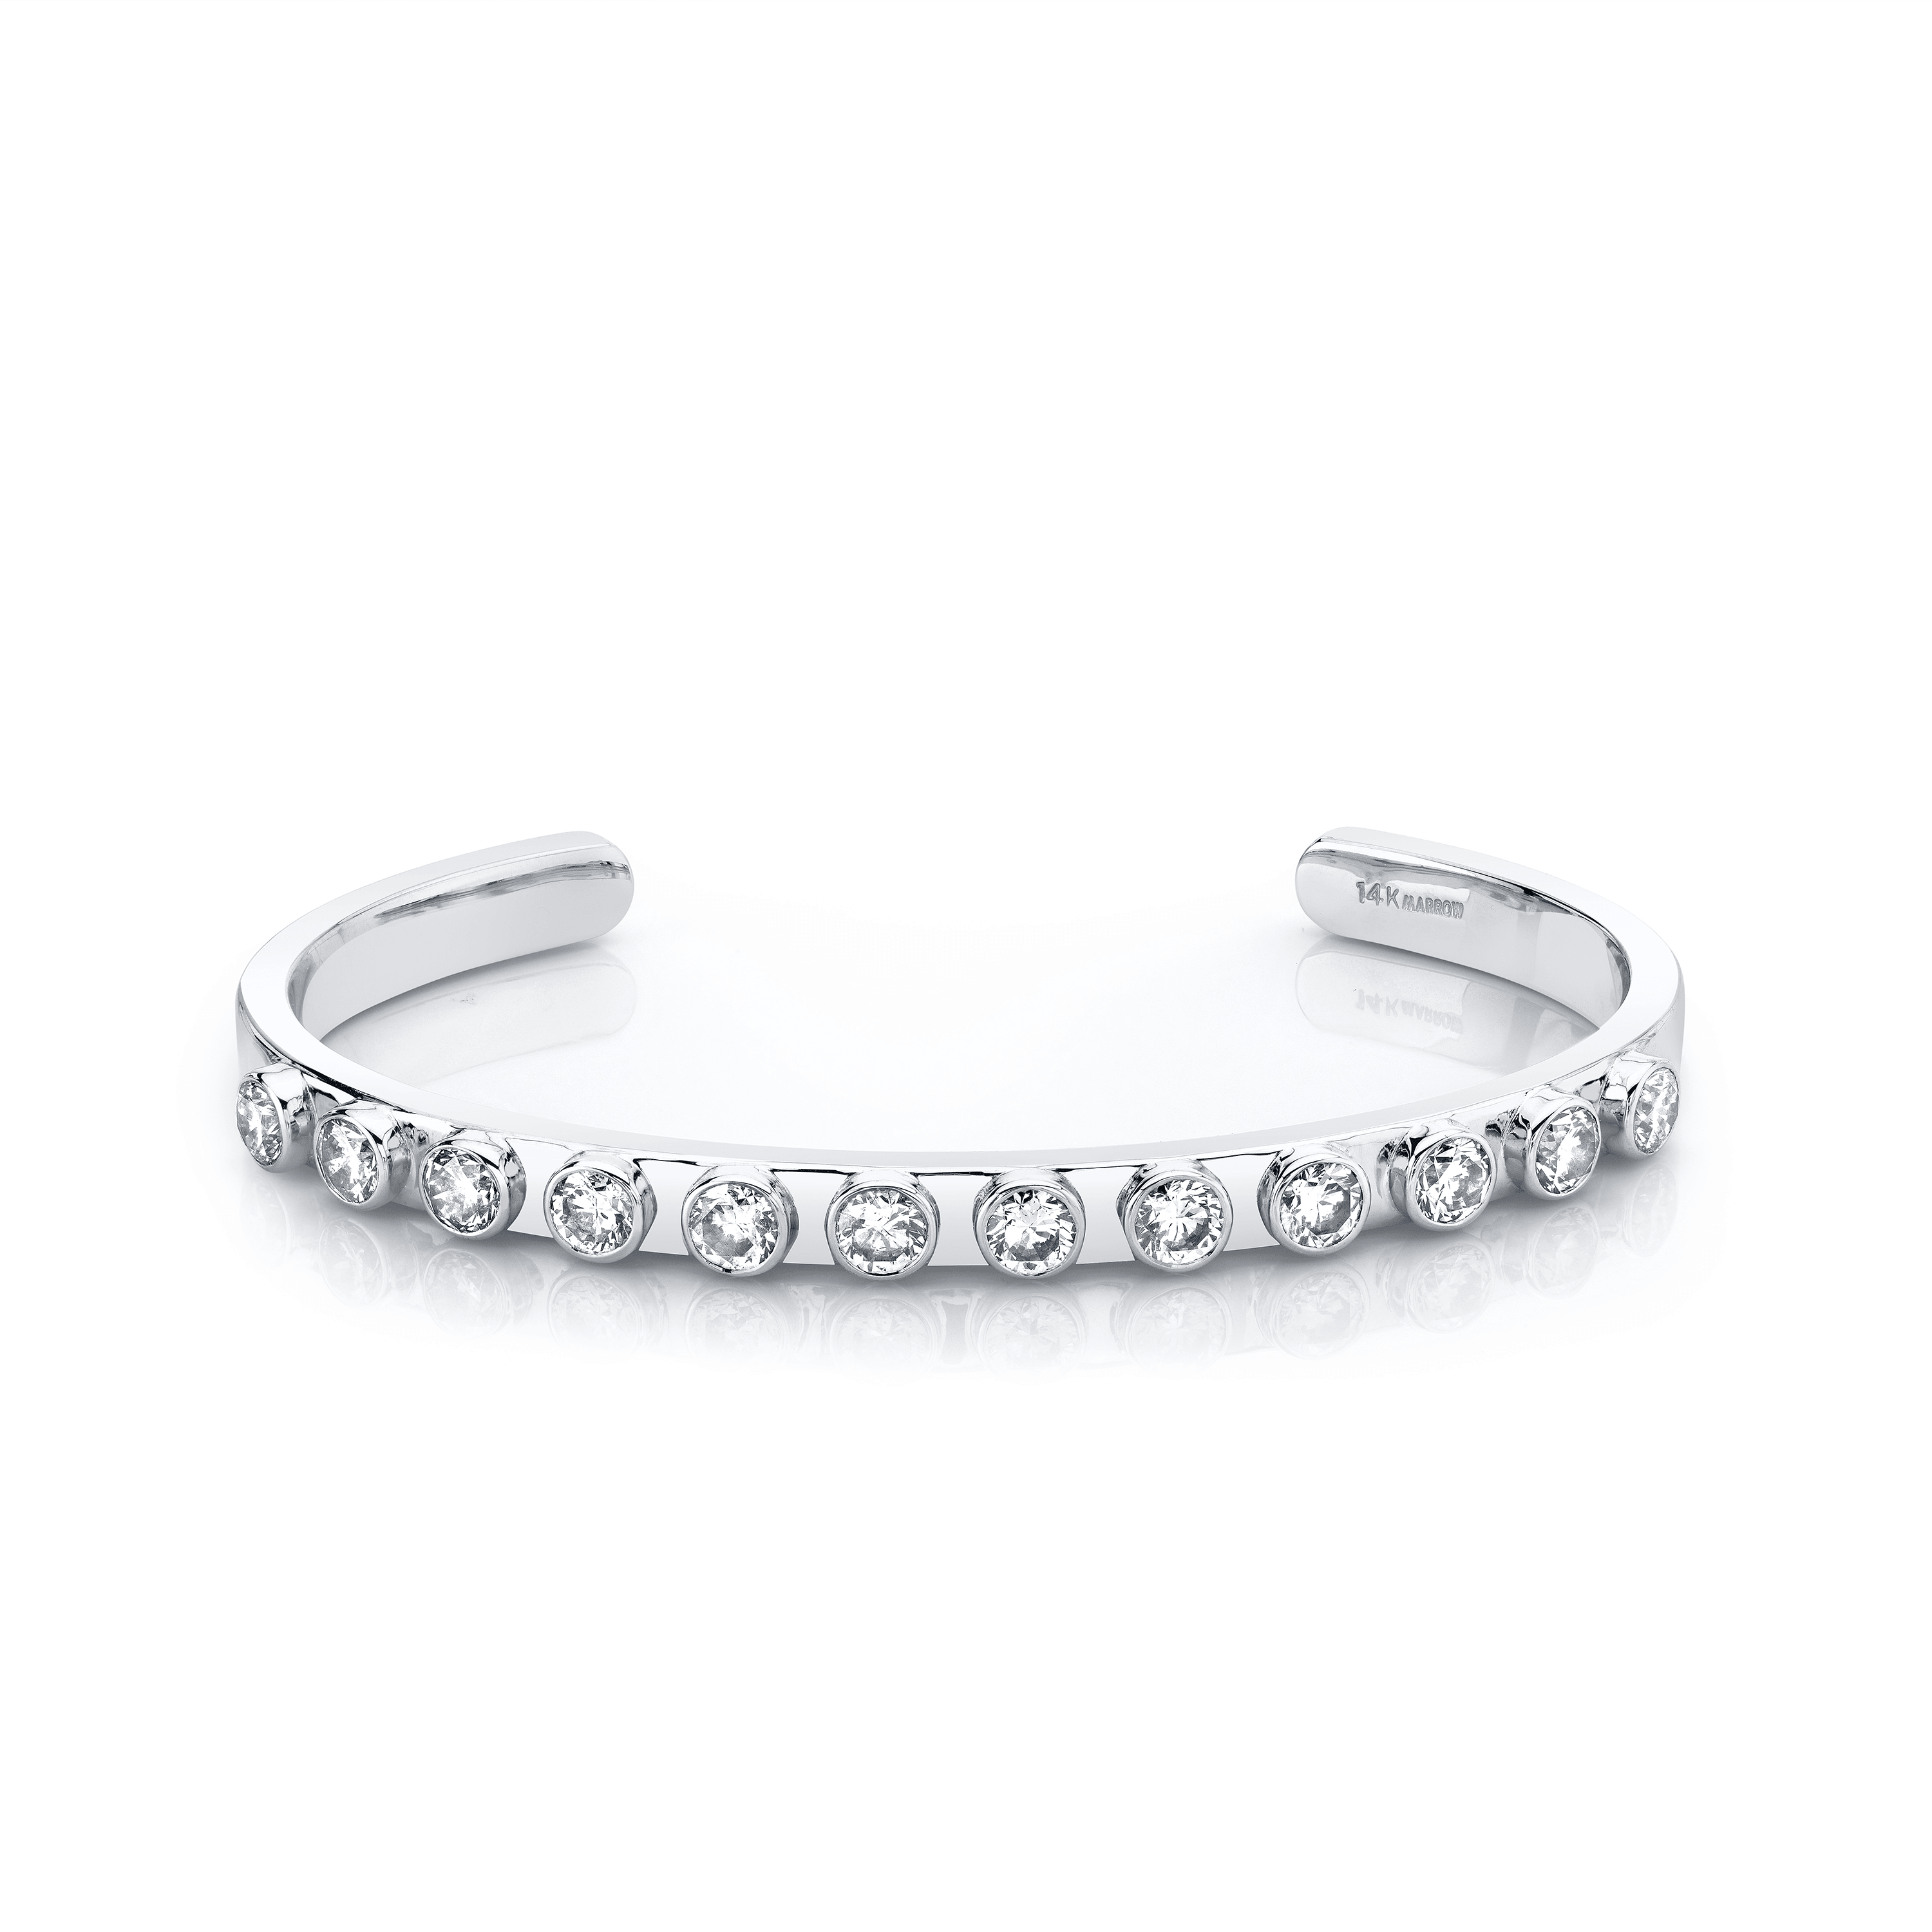 Marrow Fine Jewelry White Diamond Cuff Bracelet